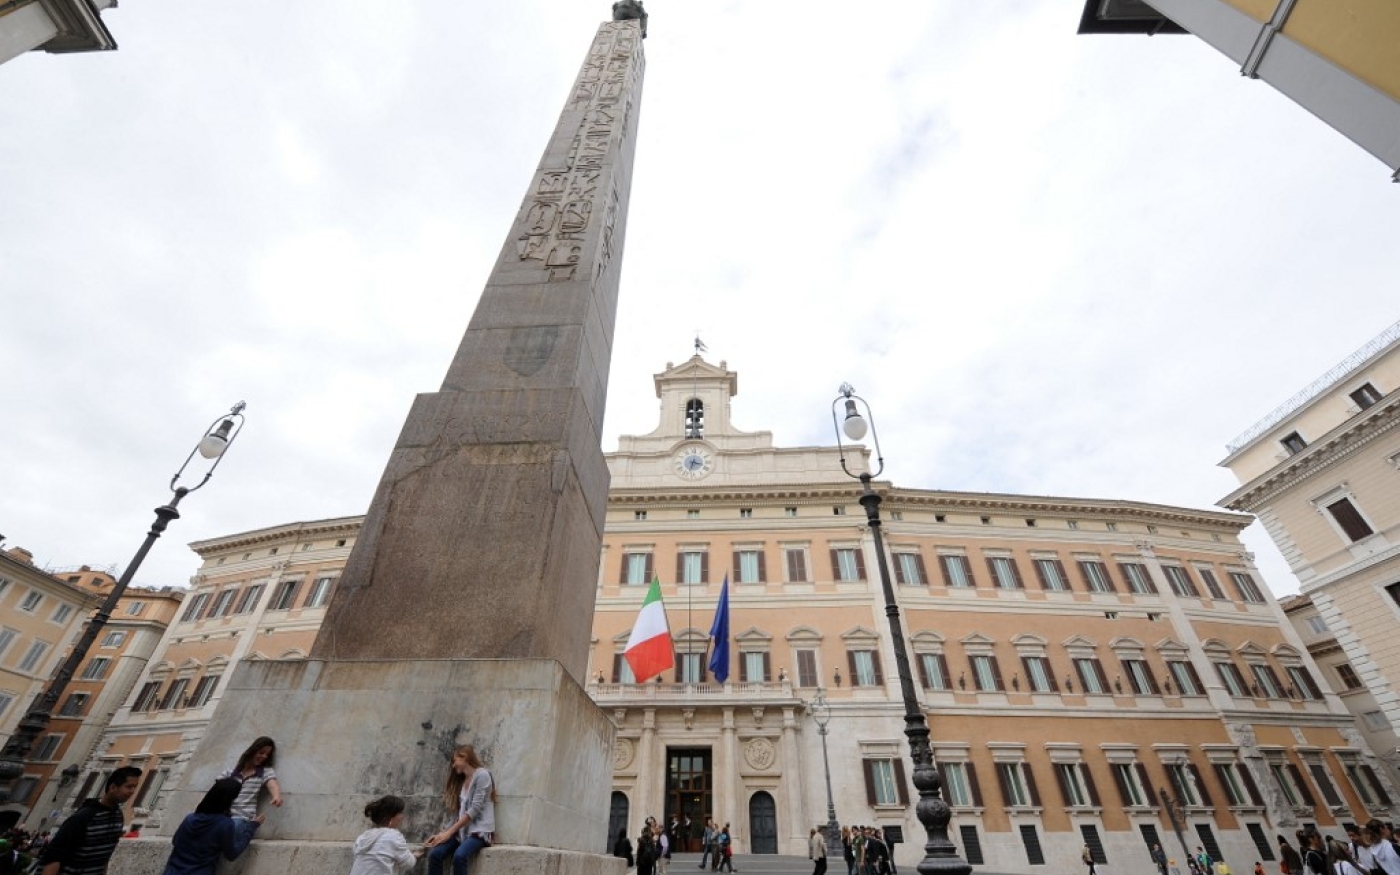 Des touristes se rassemblent autour de l’obélisque du Montecitorio à Rome, en 2009 (AFP)